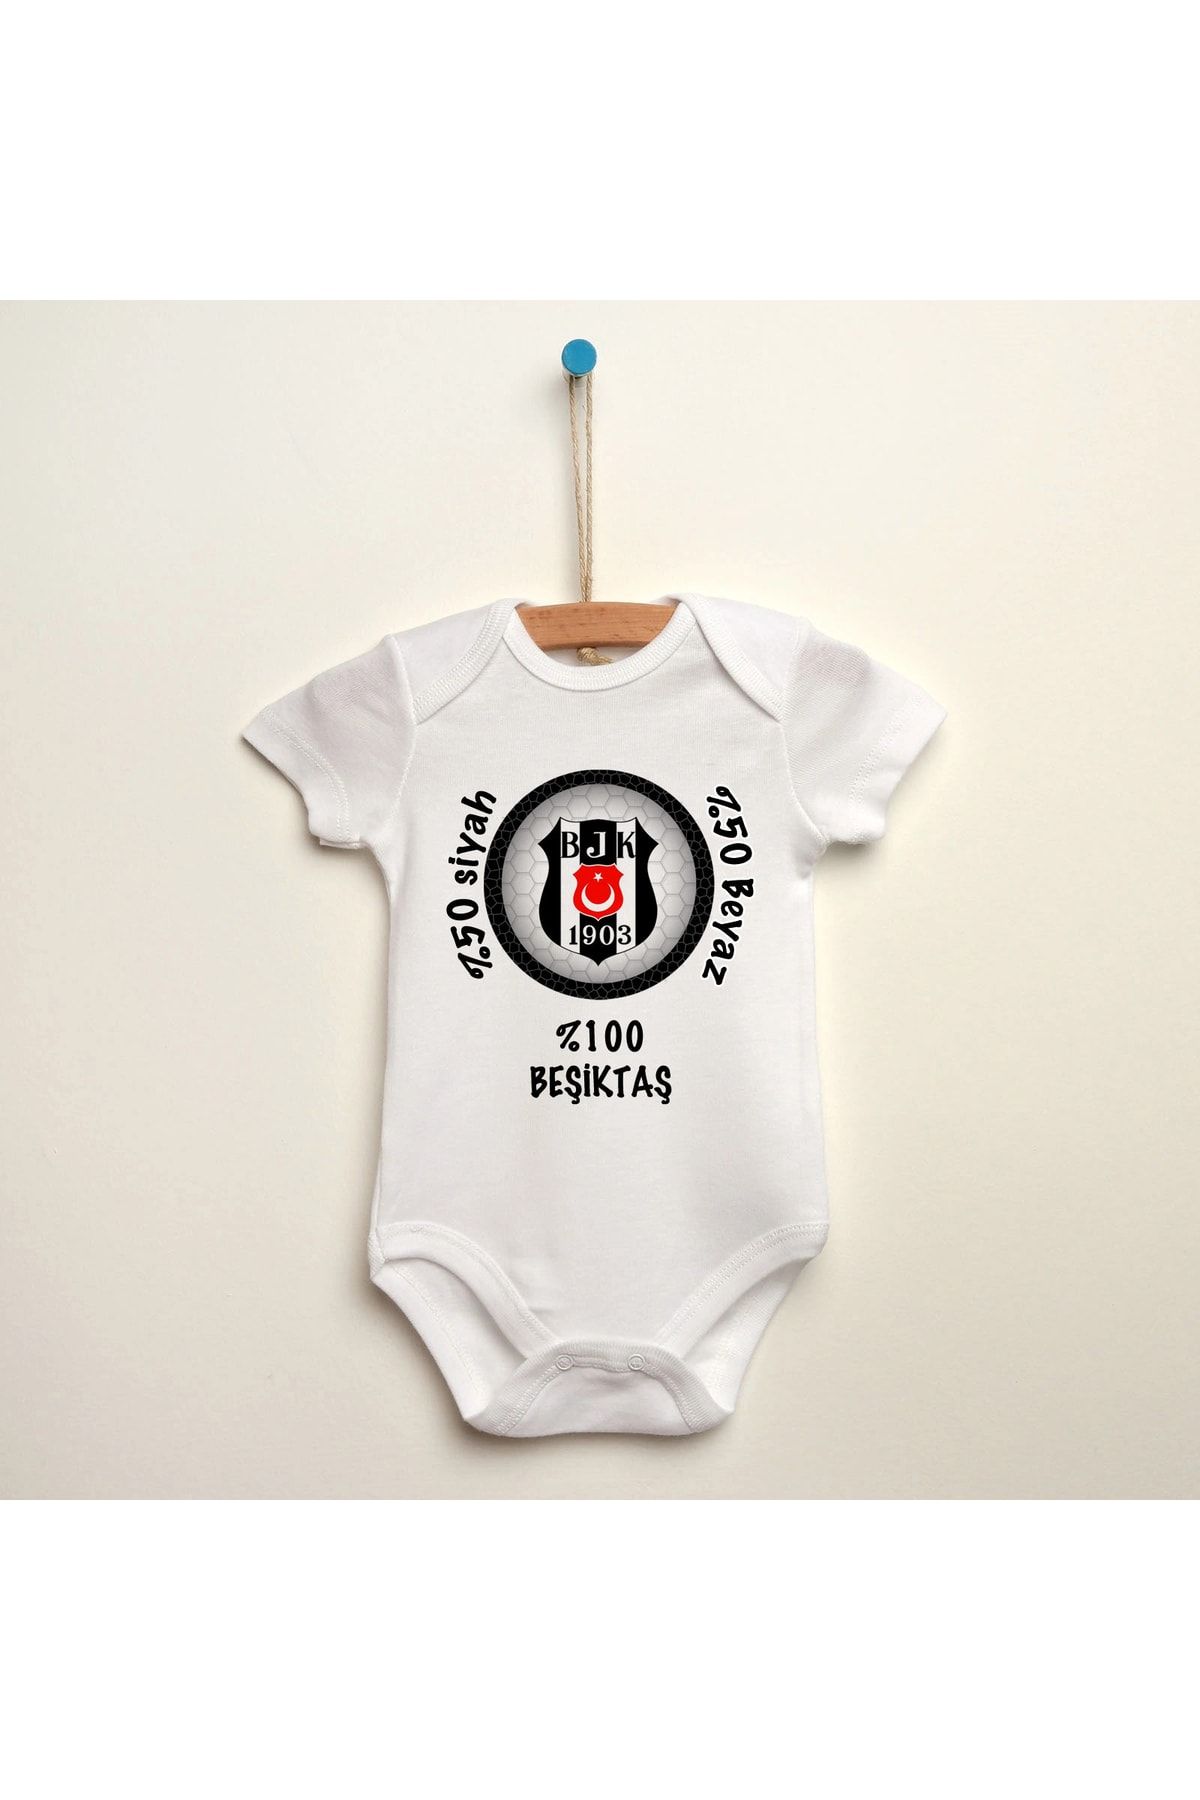 Beşiktaş Siyah Beyaz Baskılı Organik Pamuklu Bebek Body Zıbın